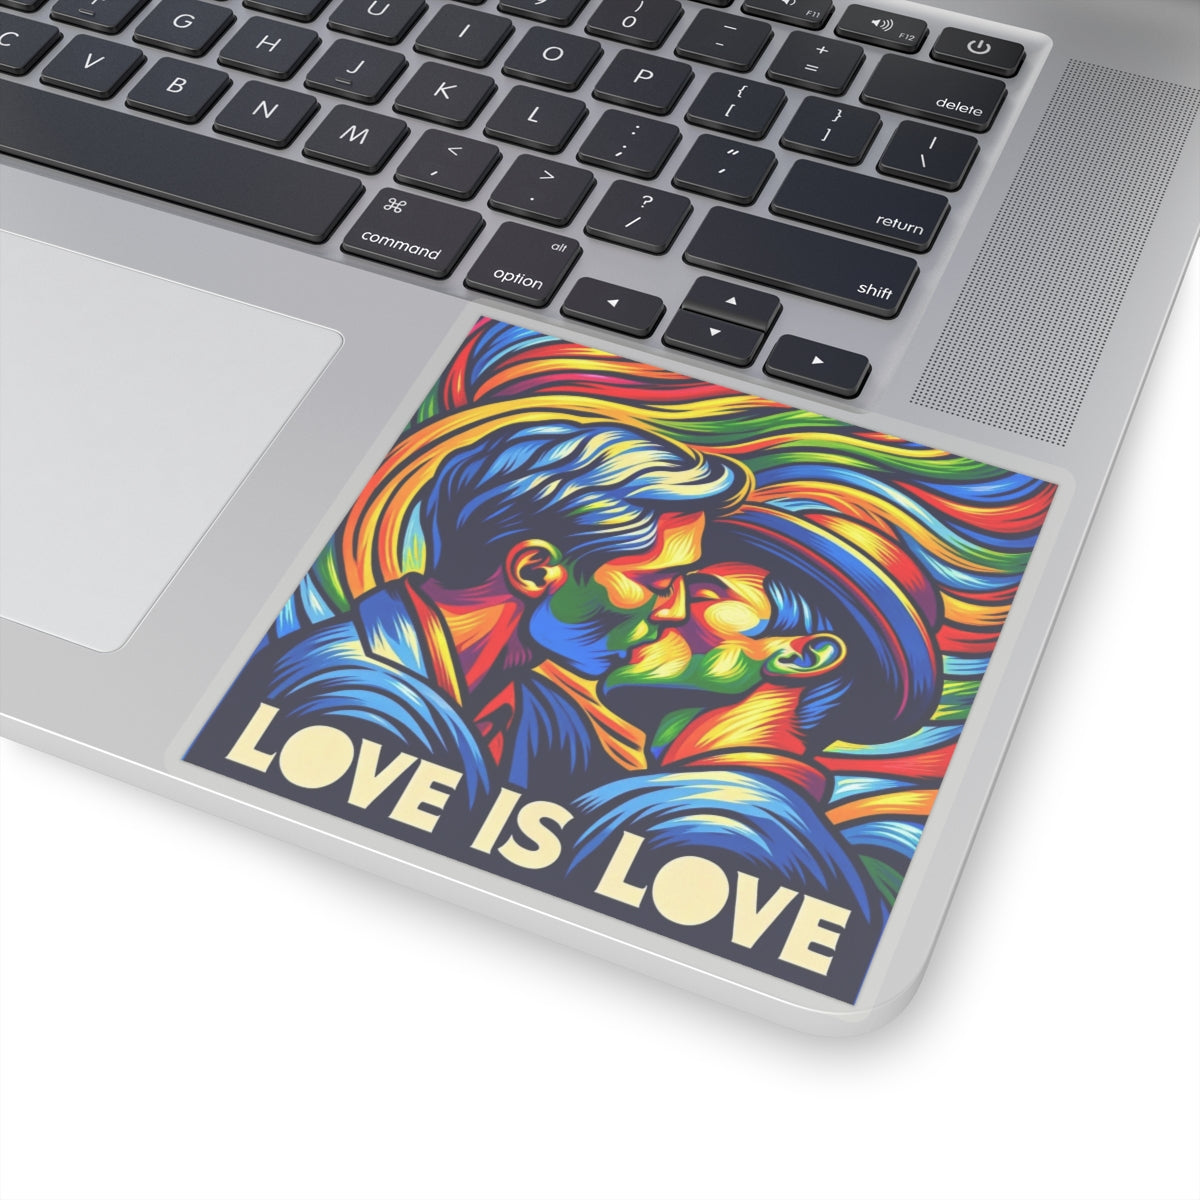 Bold Statement Sticker: Love is Love!